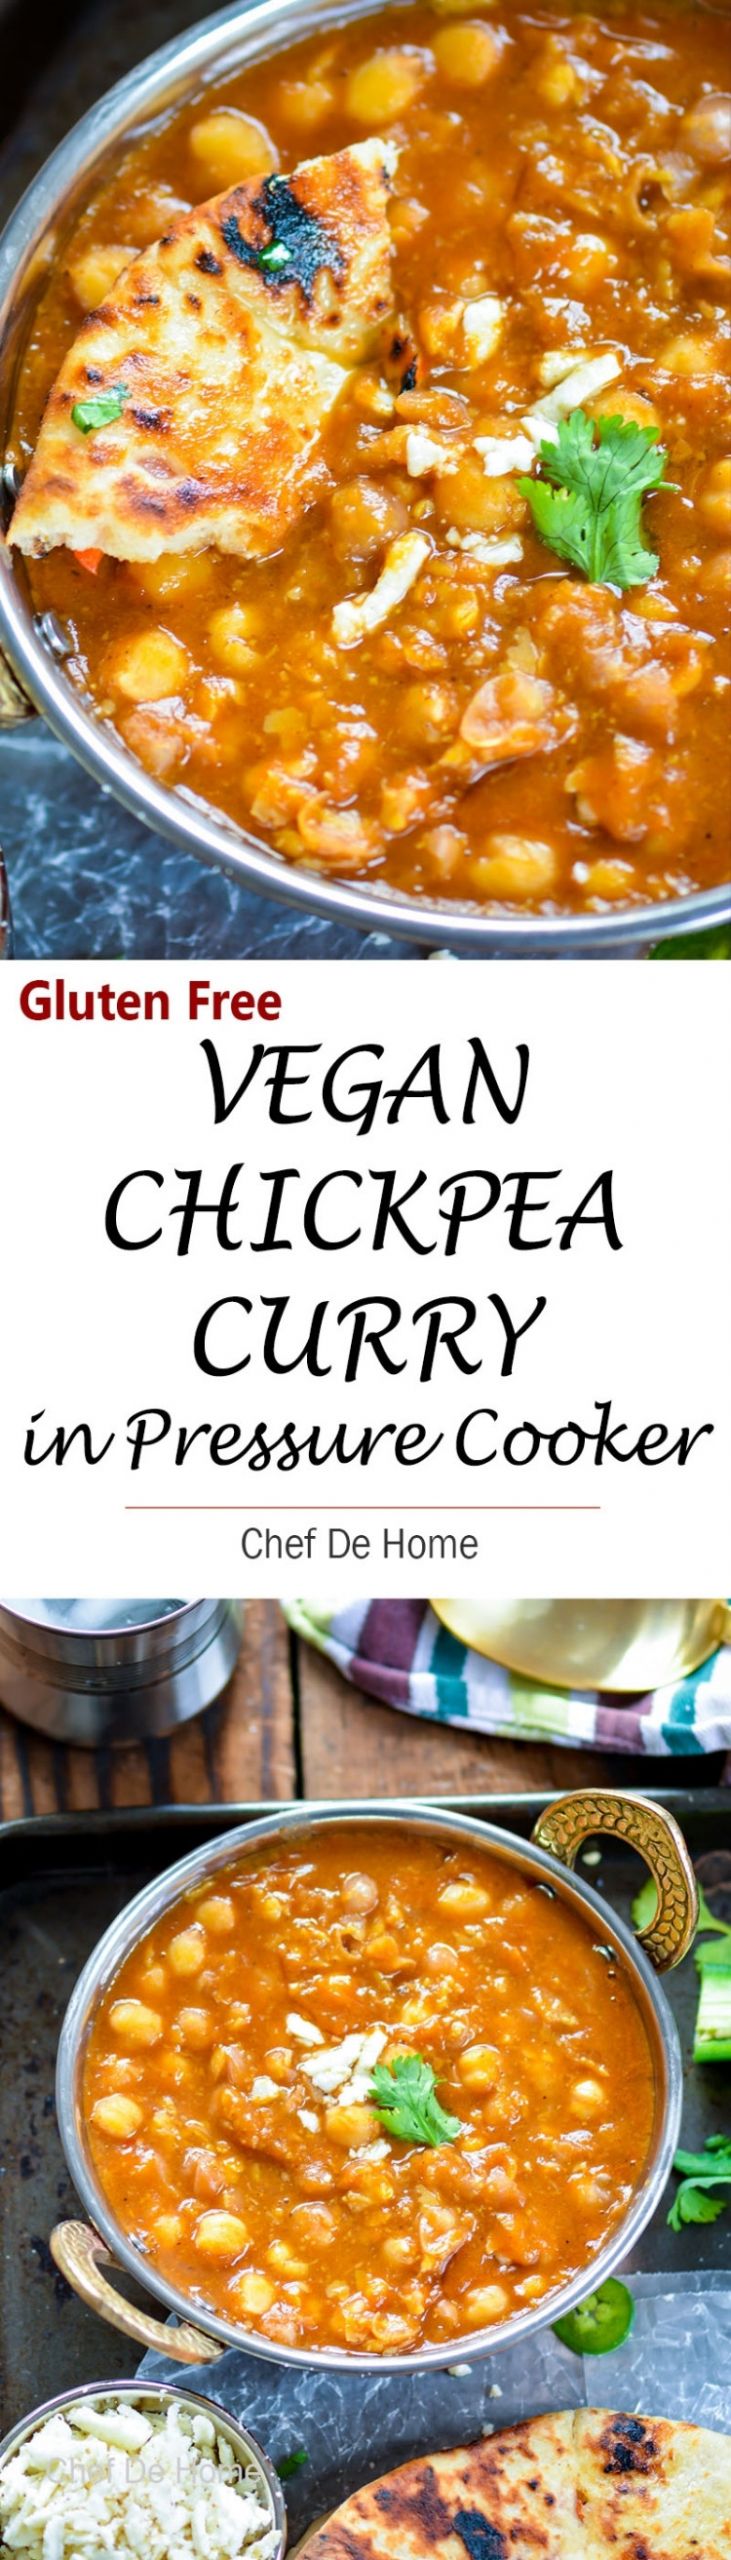 Pressure Cooker Vegan Recipes
 Vegan Chickpea Curry in Pressure Cooker Recipe